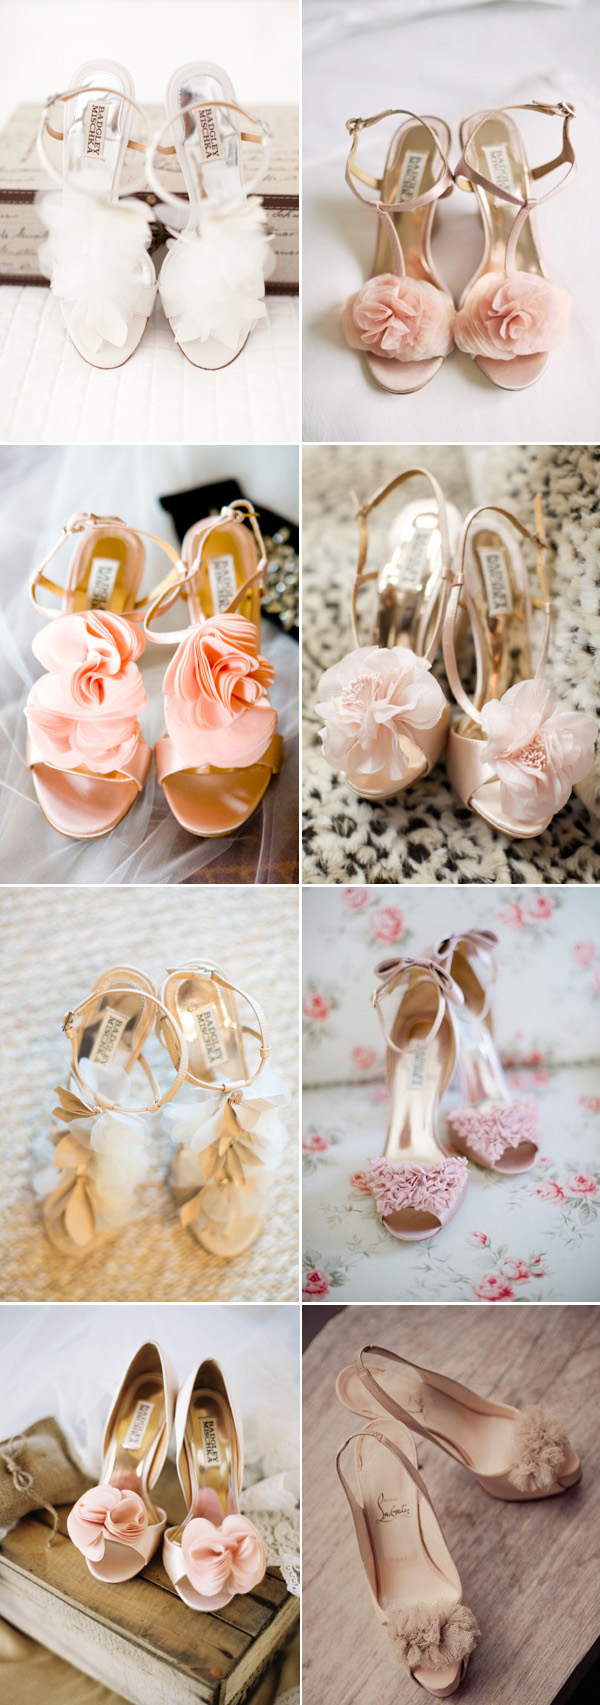 ruffles wedding shoes